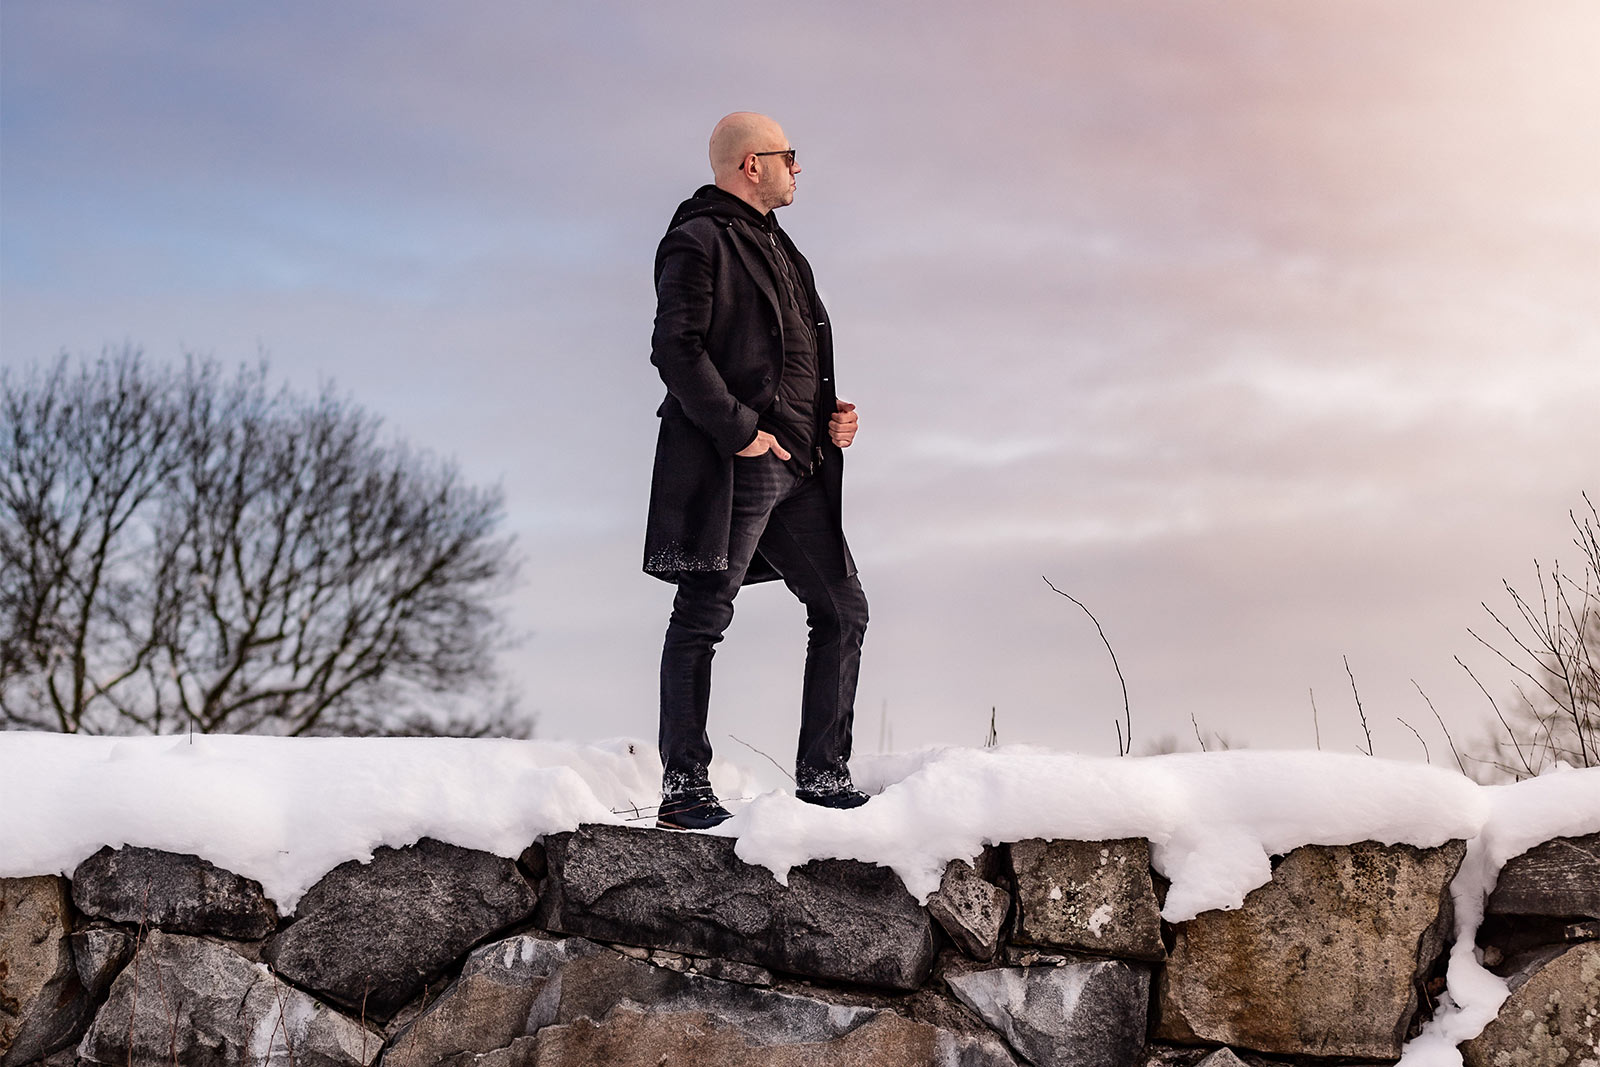 Porträttfotografering en snörik och kall vinterdag. Mannen som fotograferas är svartklädd och står uppe på en snötäckt stenmur. I bakgrunden är himmelen rosa.